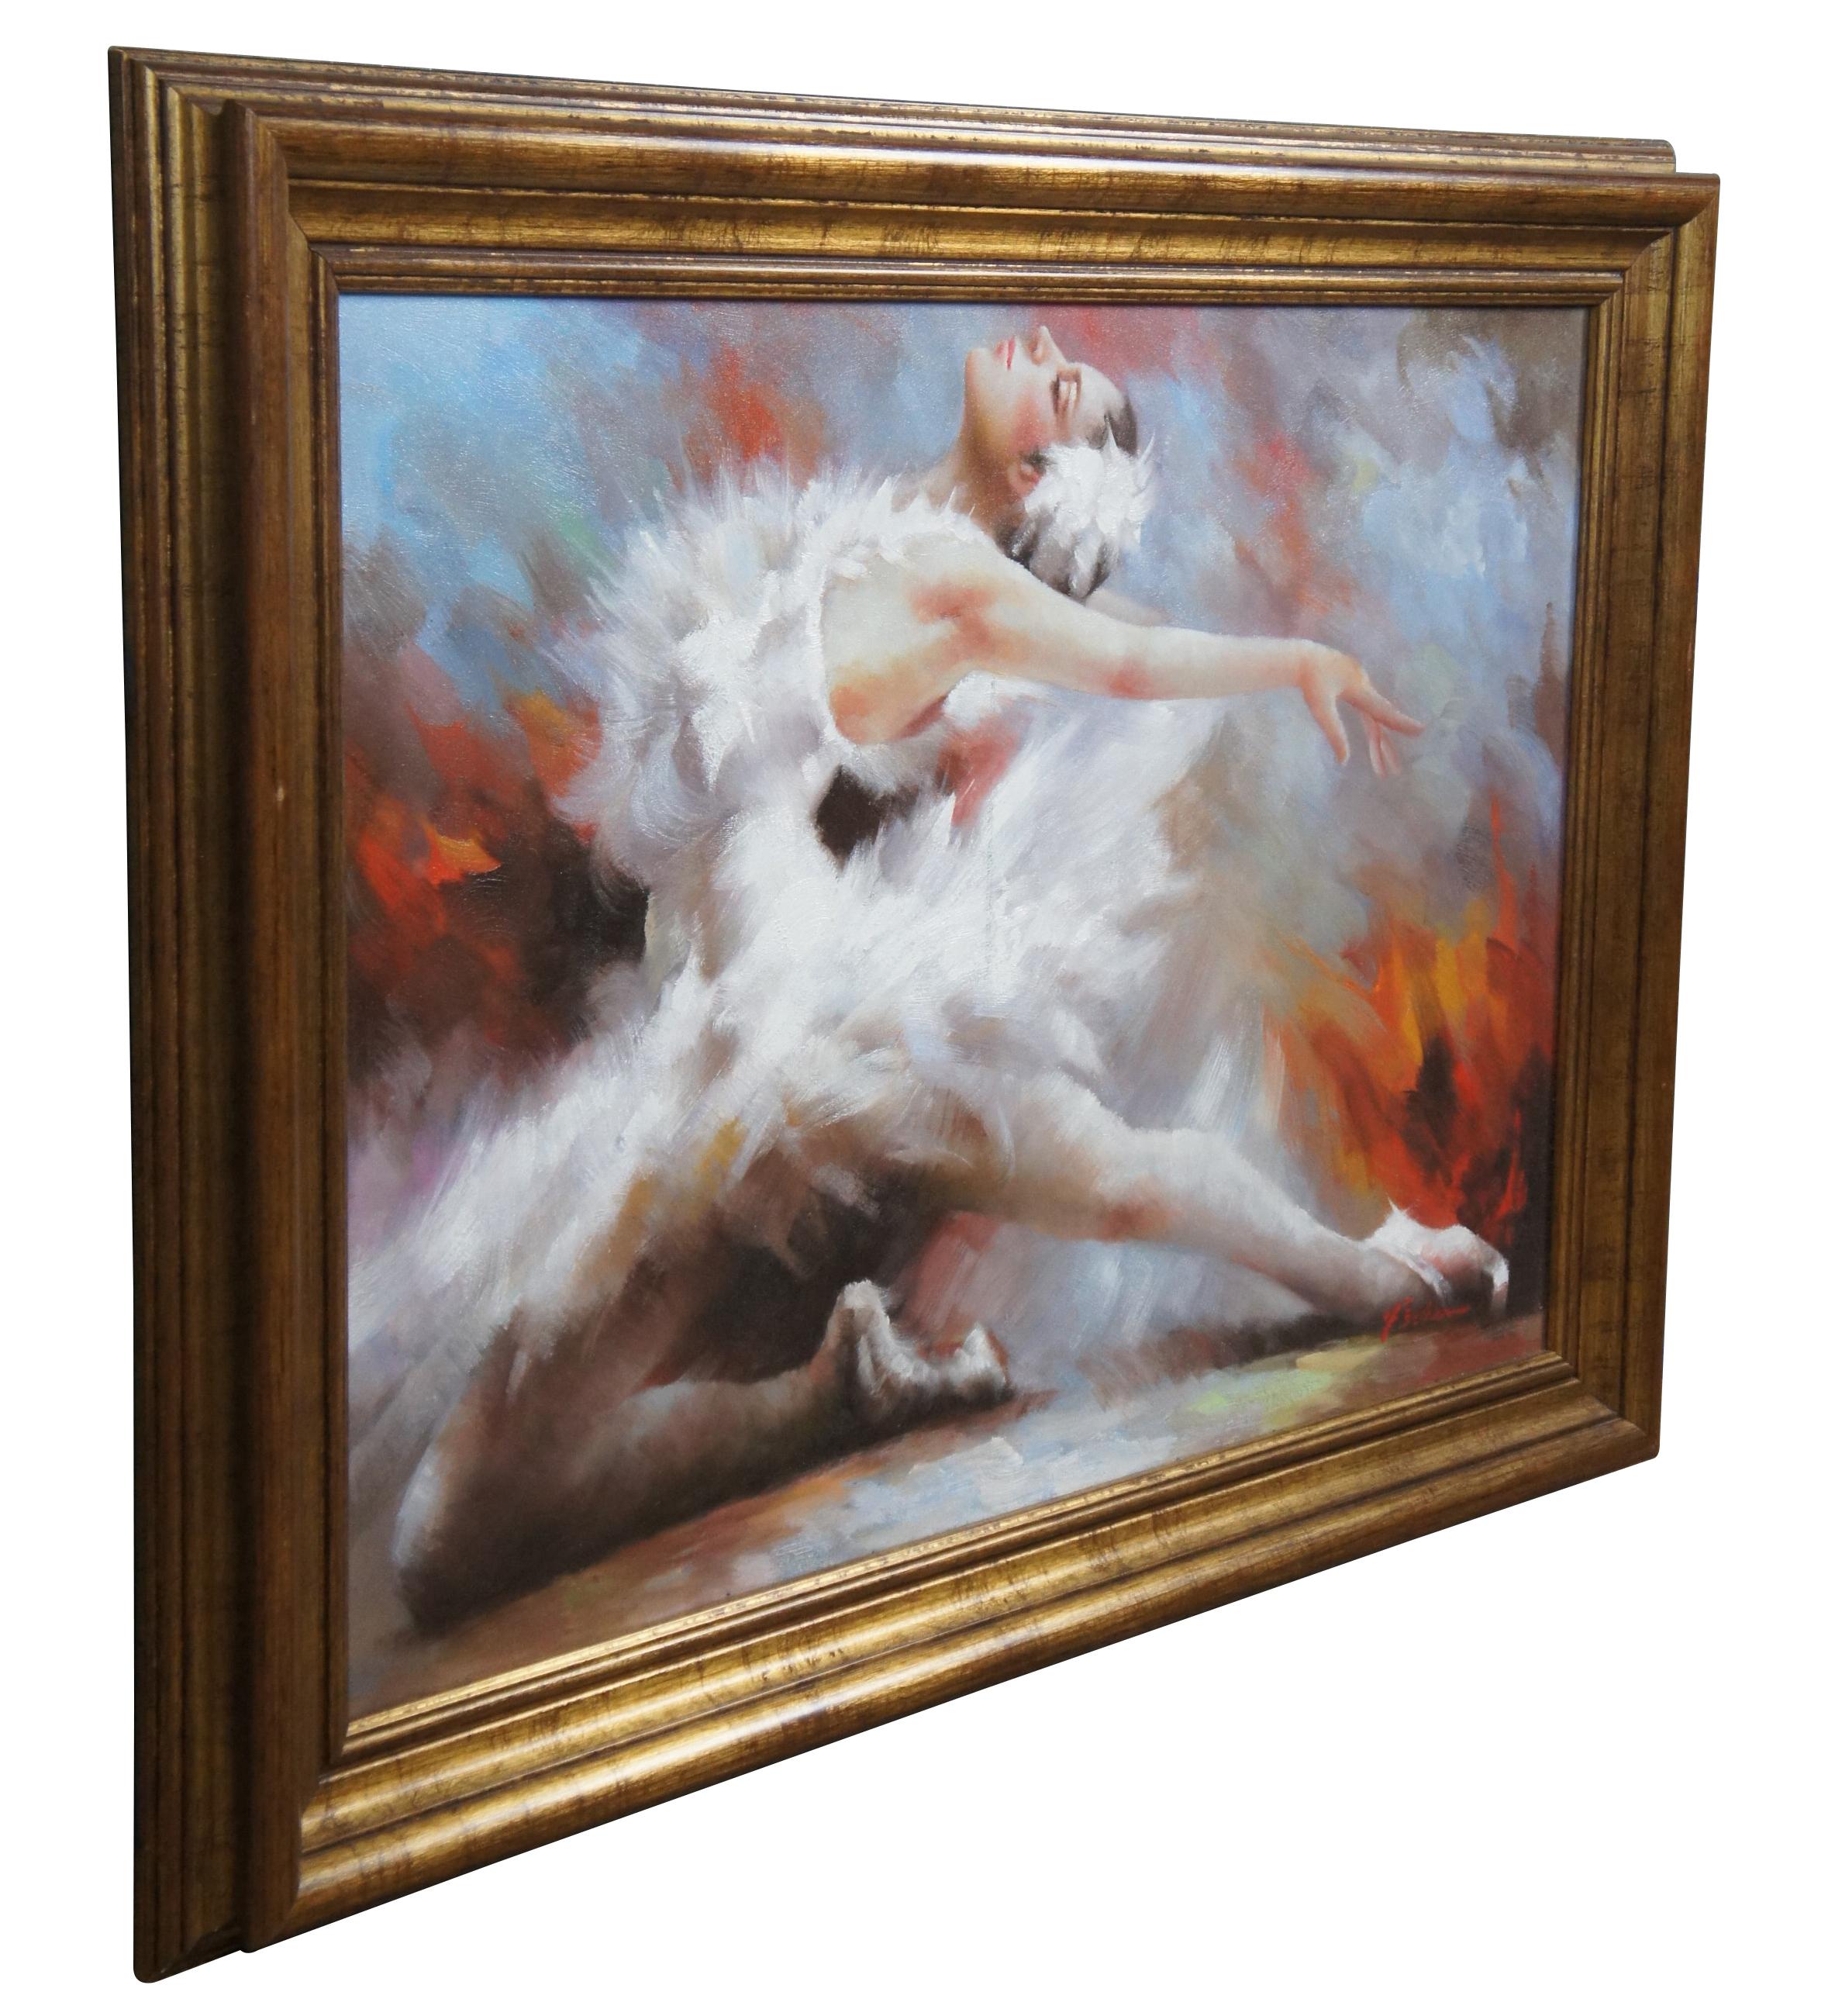 Ein Ölgemälde im impressionistischen Stil, das eine Ballerina in einer Pose zeigt. Signiert unten rechts von Fisher. In Gold gerahmt.

Abmessungen

42